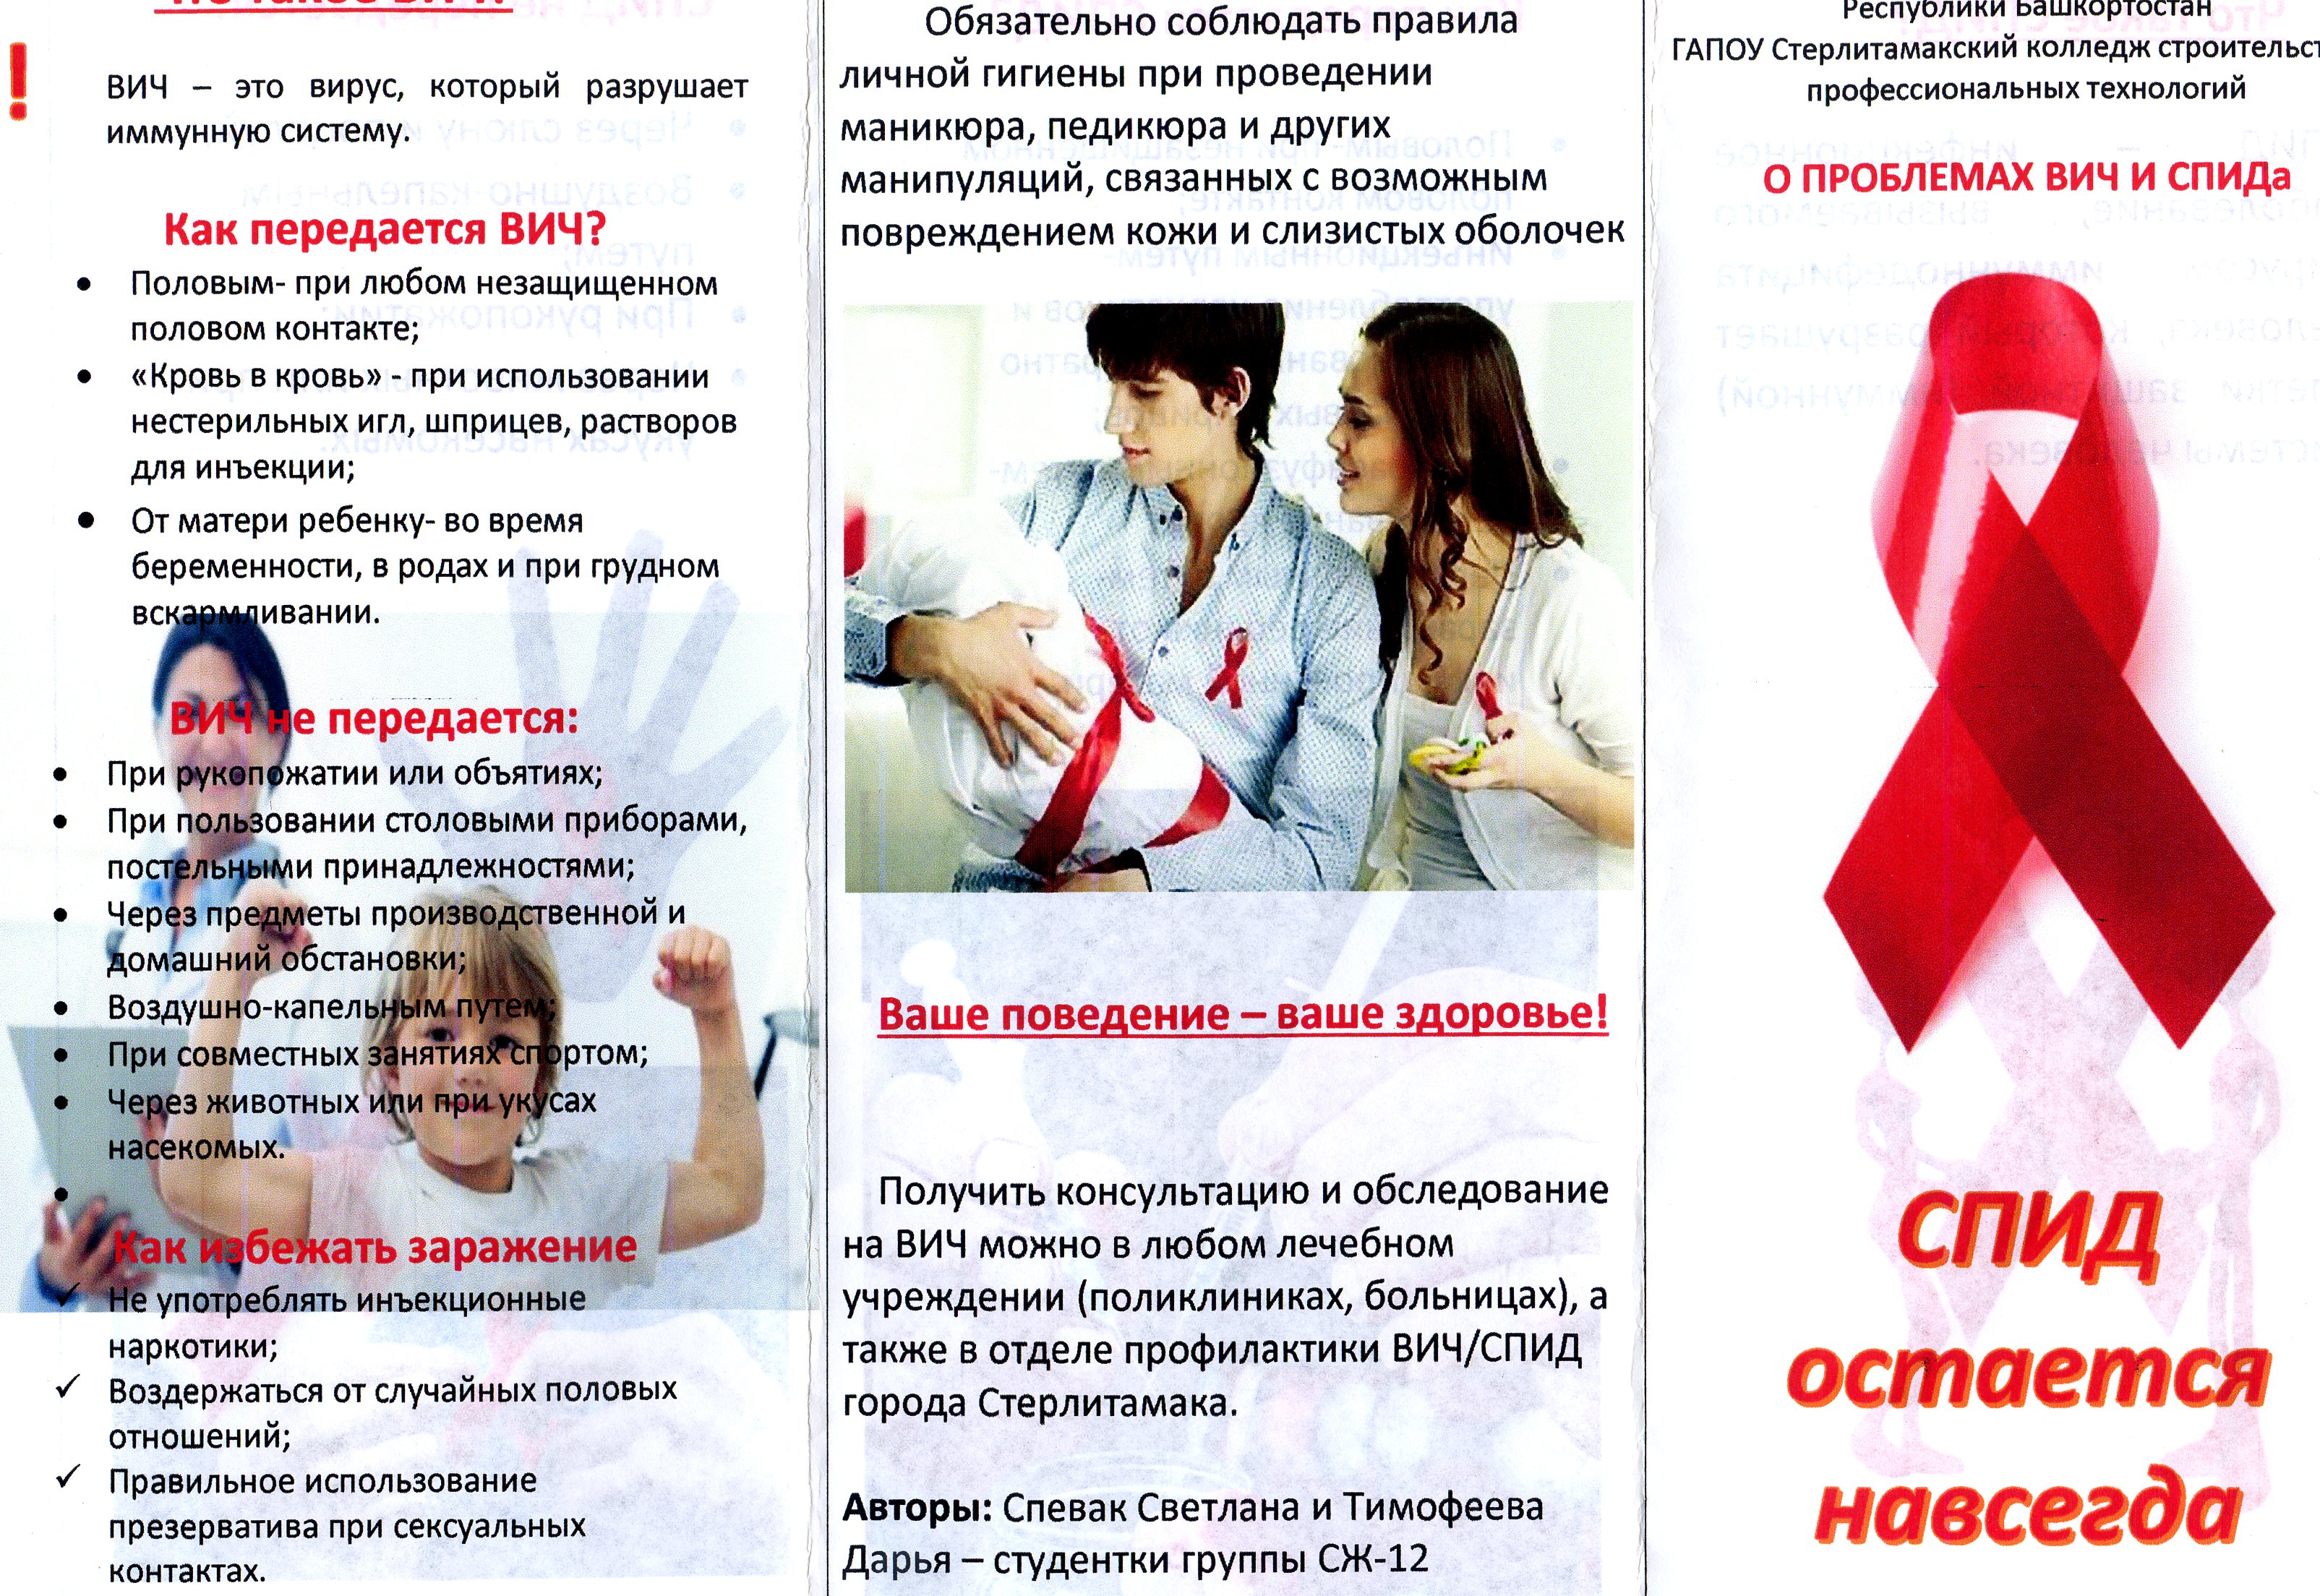 Буклет на тему ВИЧ И СПИД